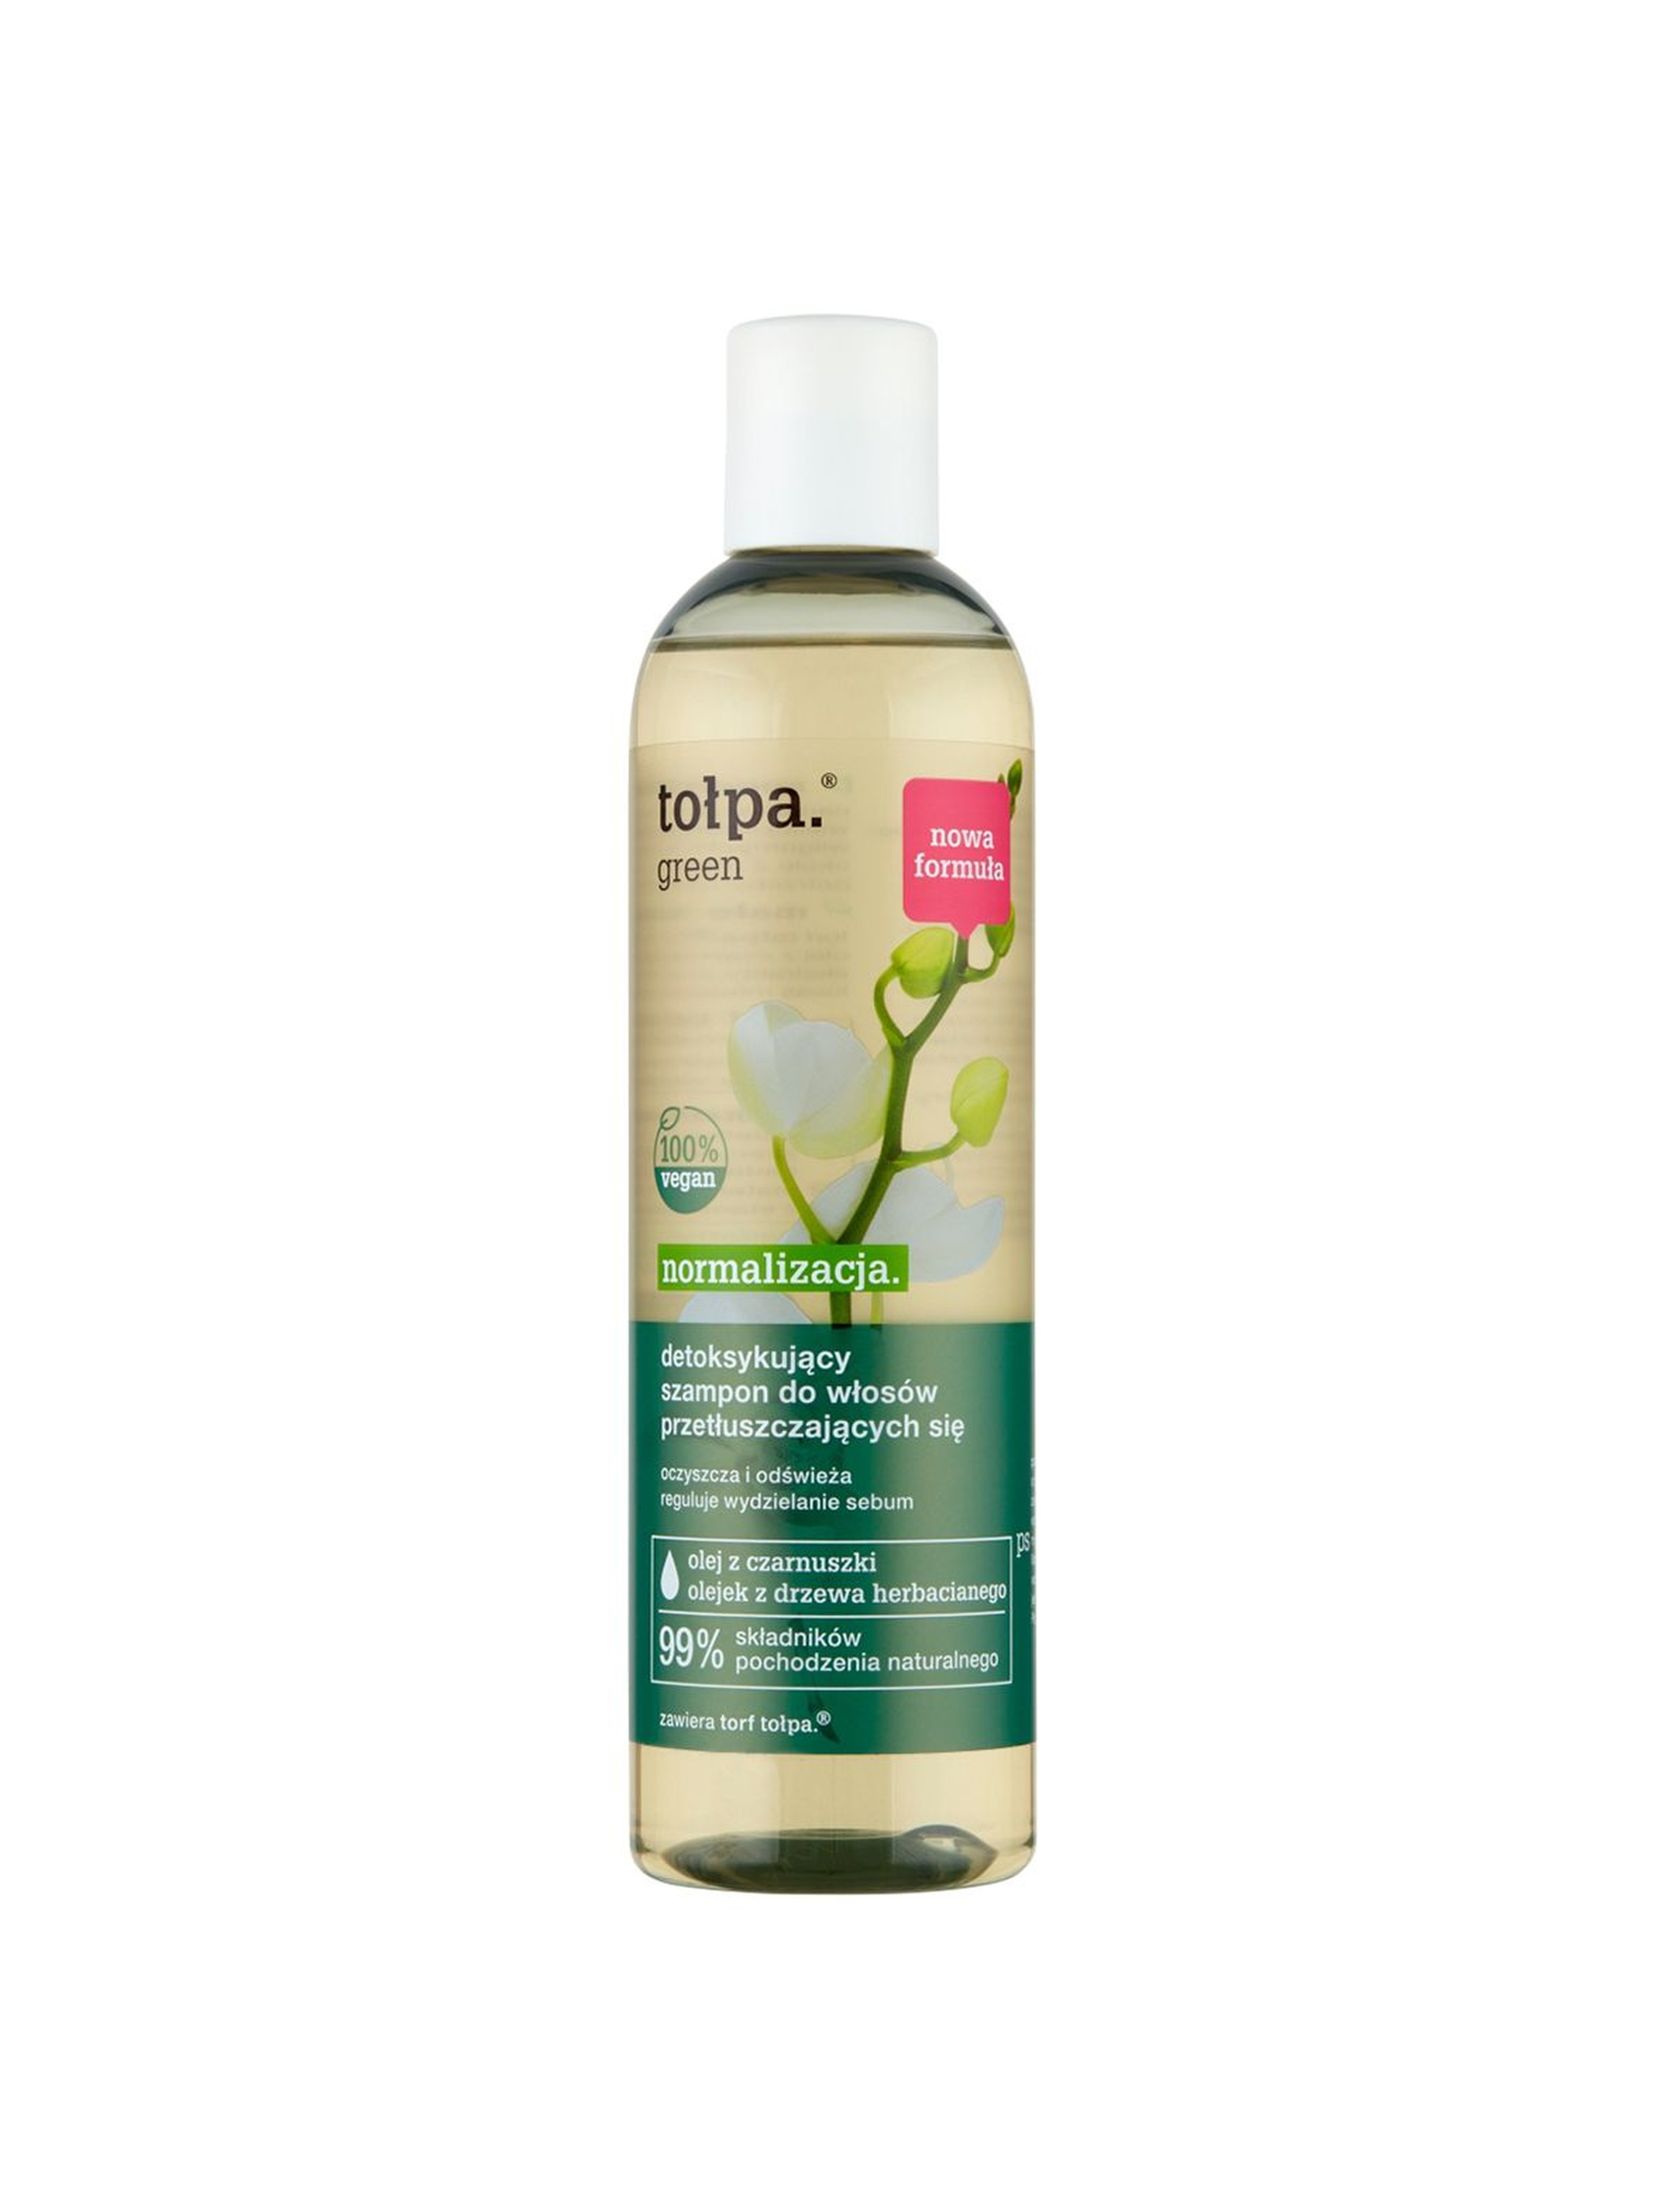 Tołpa green normalizacja-detoksykujący szampon do włosów przetłuszczających się 300 ml